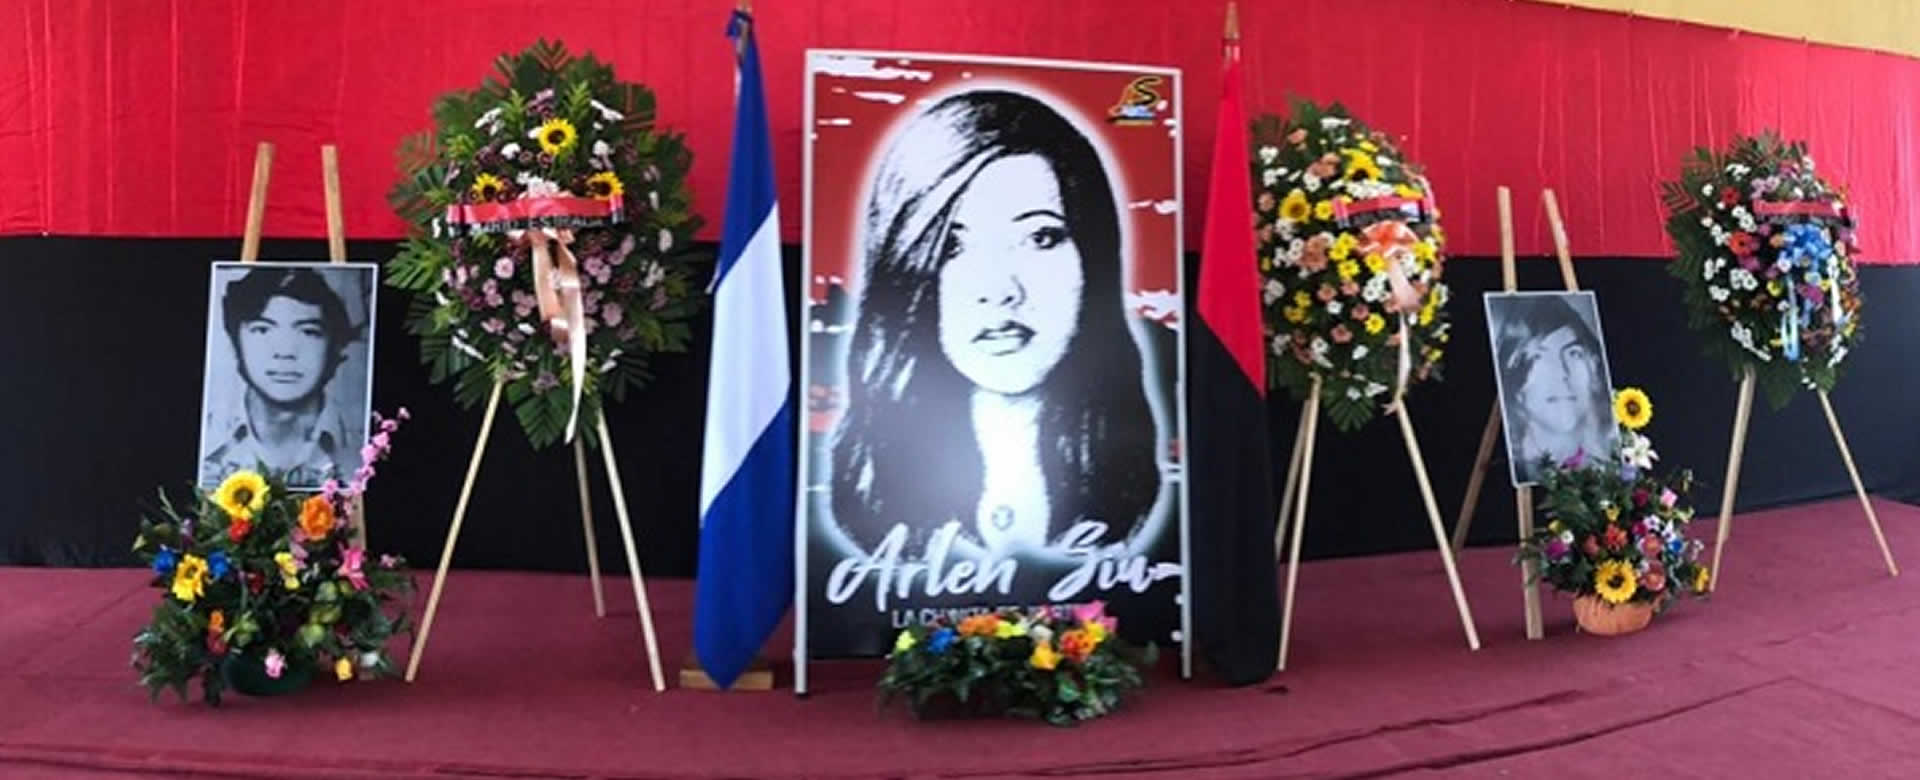 Jinotepe: Conmemoran el 44 aniversario por el fallecimiento de Arlen Siu